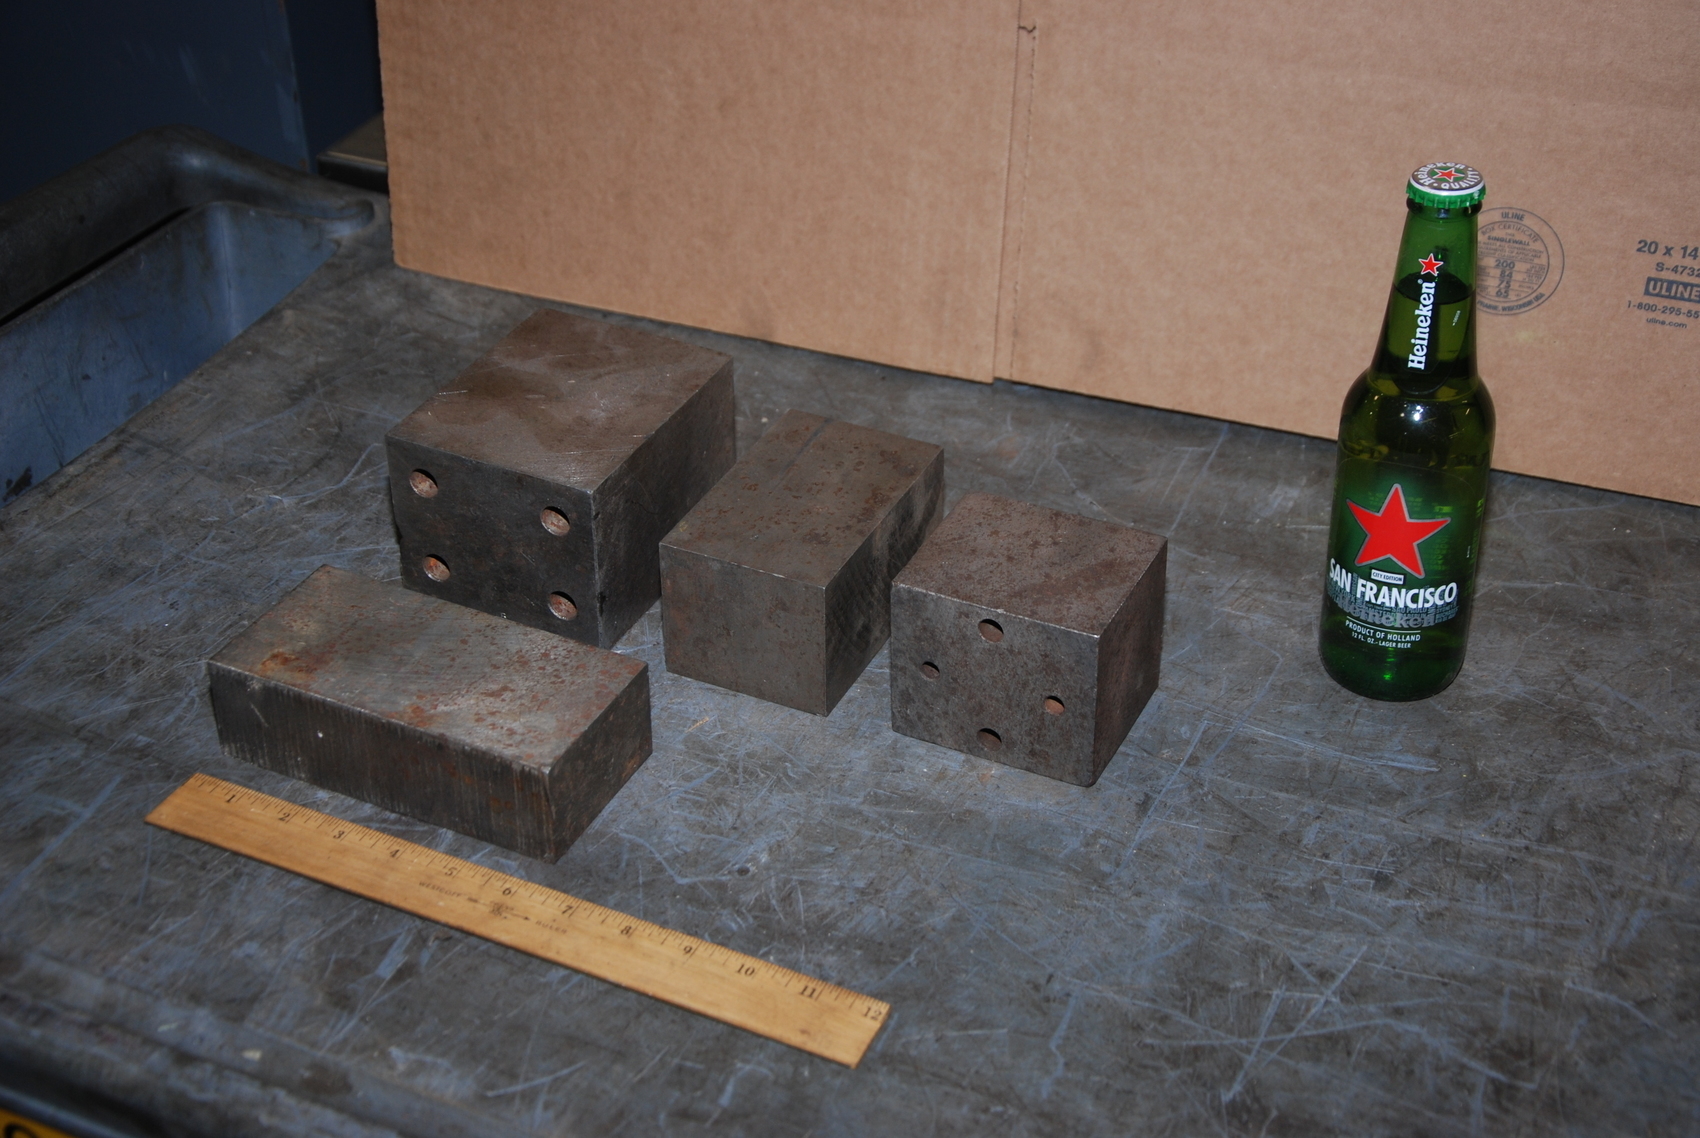 Lot of 4 steel Rectangular Bars for blacksmith anvil,46 lbs